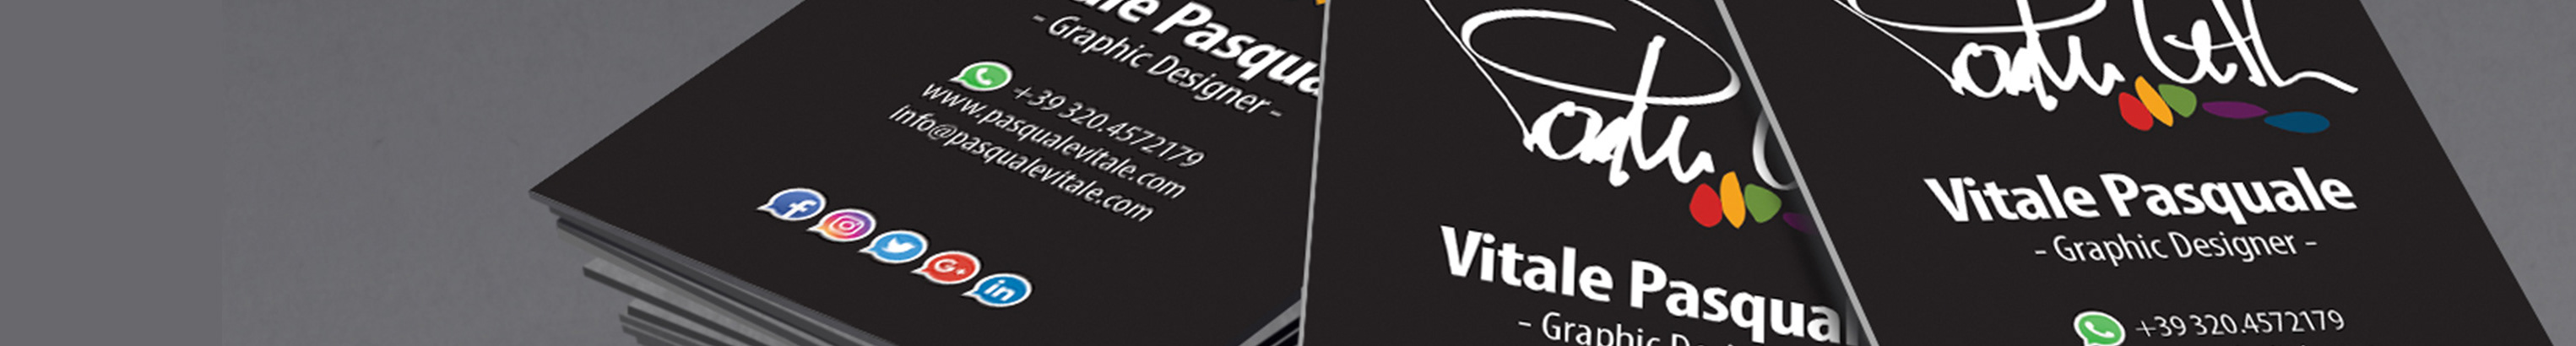 Pasquale Vitale's profile banner